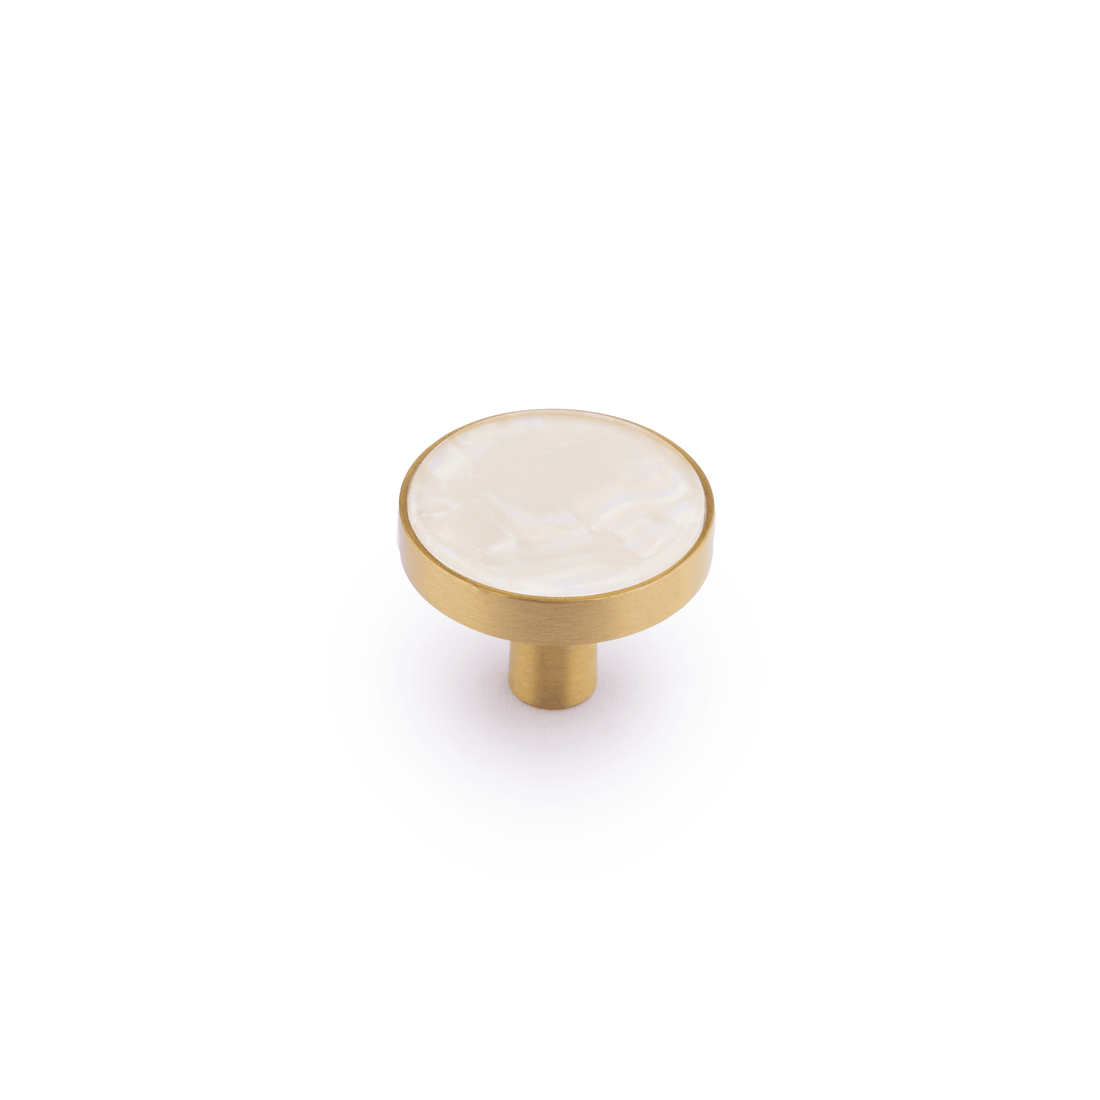 Regal Pearl Knob Knob 27mm / White / Brass - M A N T A R A